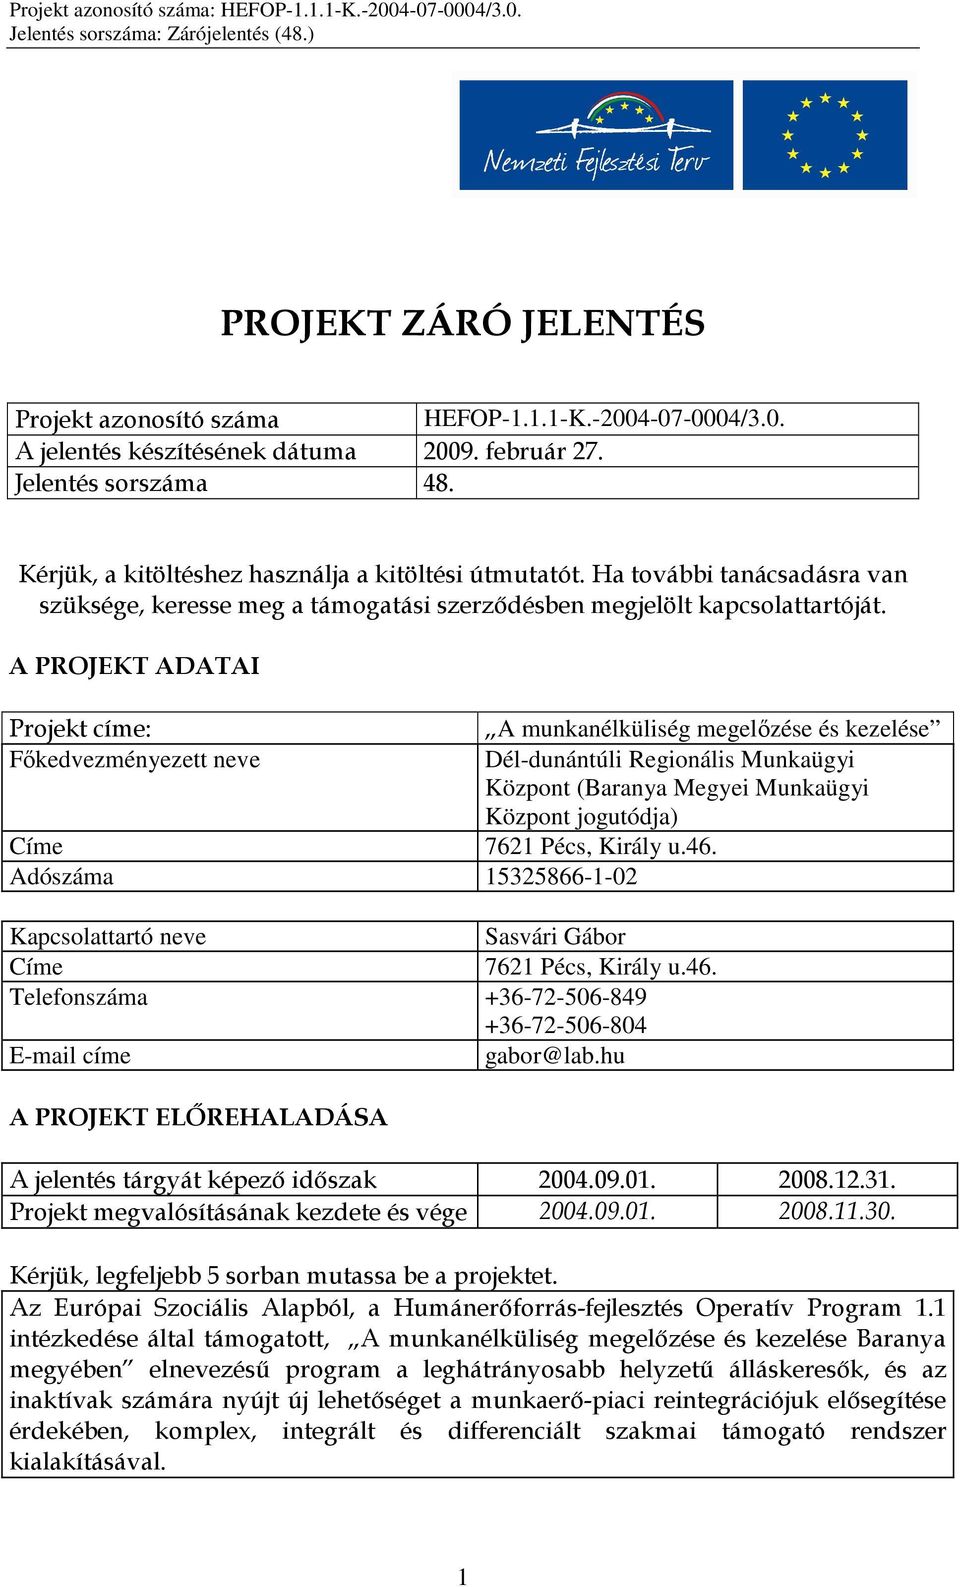 A PROJEKT ADATAI Projekt címe: A munkanélküliség megelızése és kezelése Fıkedvezményezett neve Dél-dunántúli Regionális Munkaügyi Központ (Baranya Megyei Munkaügyi Központ jogutódja) Címe 7621 Pécs,